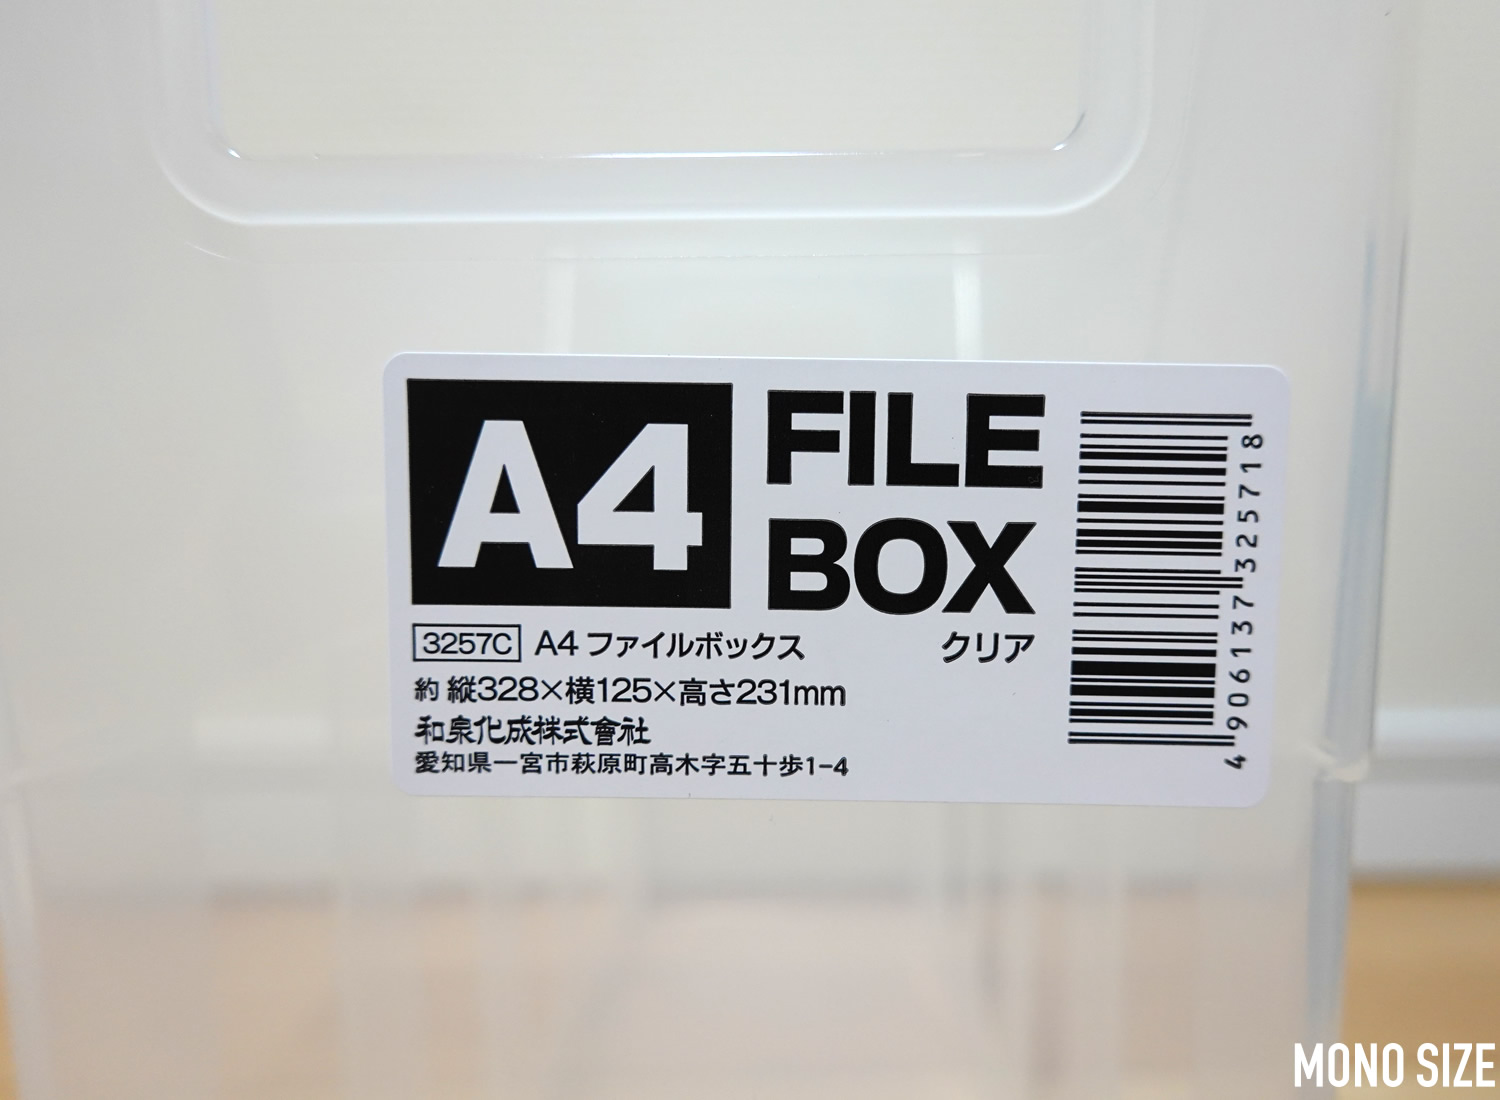 100均セリアで売られていたA4ファイルボックスの収納グッズ商品画像